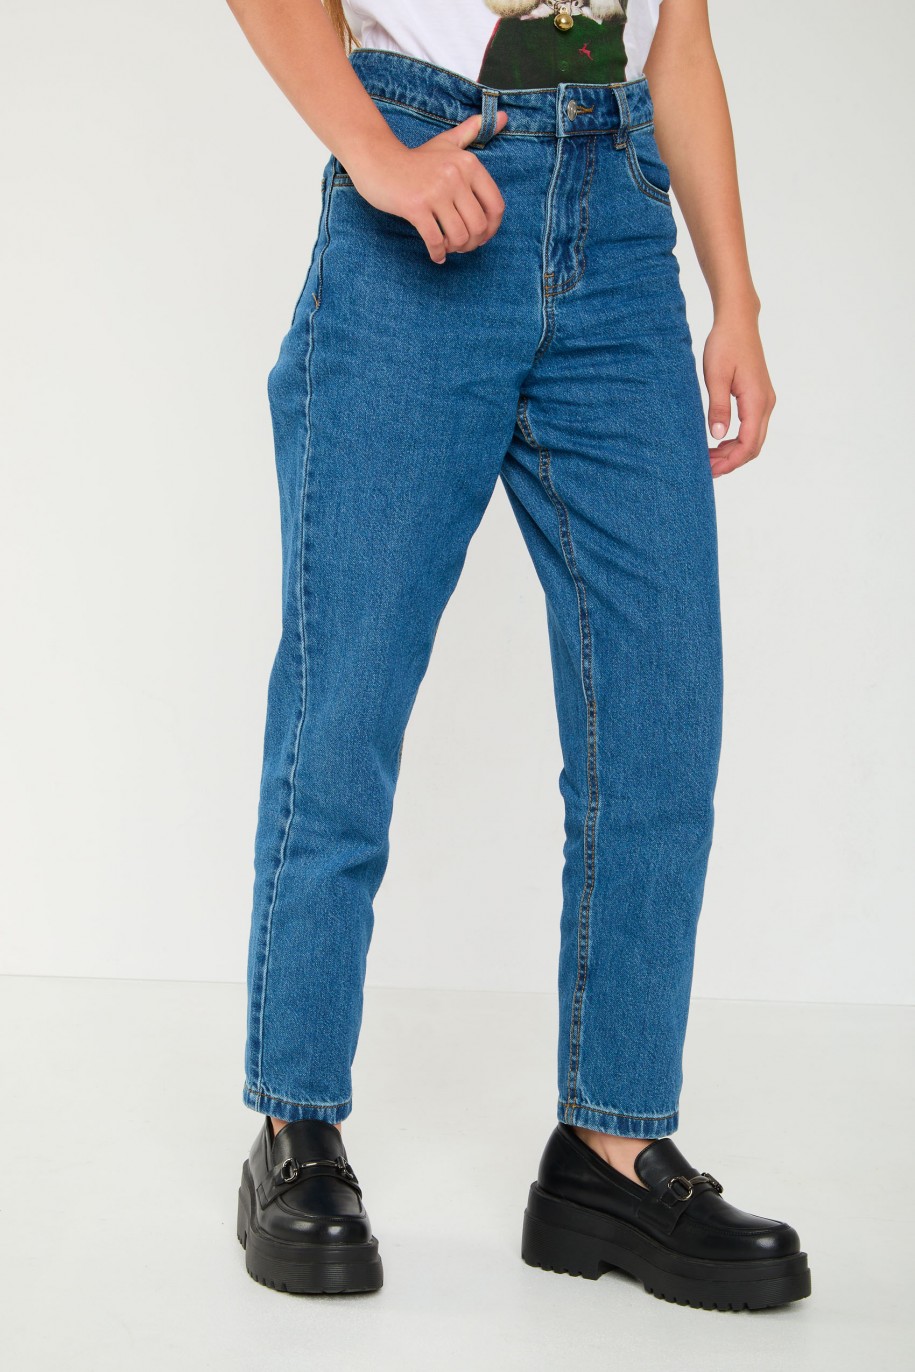 Niebieskie jeansy typu MOM FIT - 45360